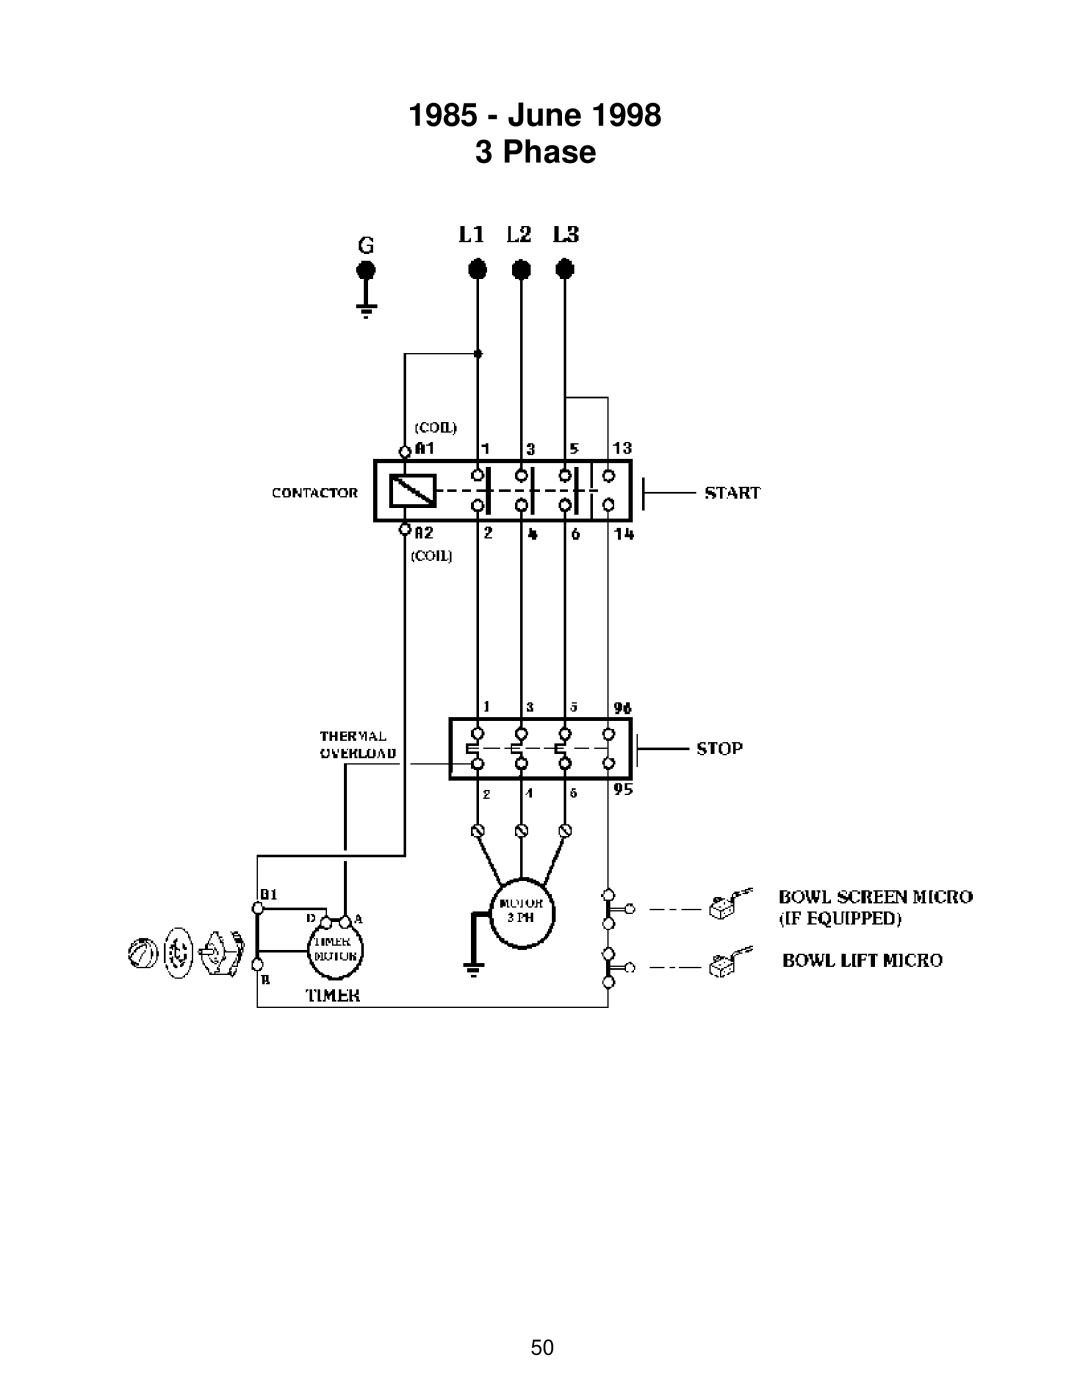 Varimixer W30(A), W60P, W40P, W40(A), W60(A) operation manual June 3 Phase 